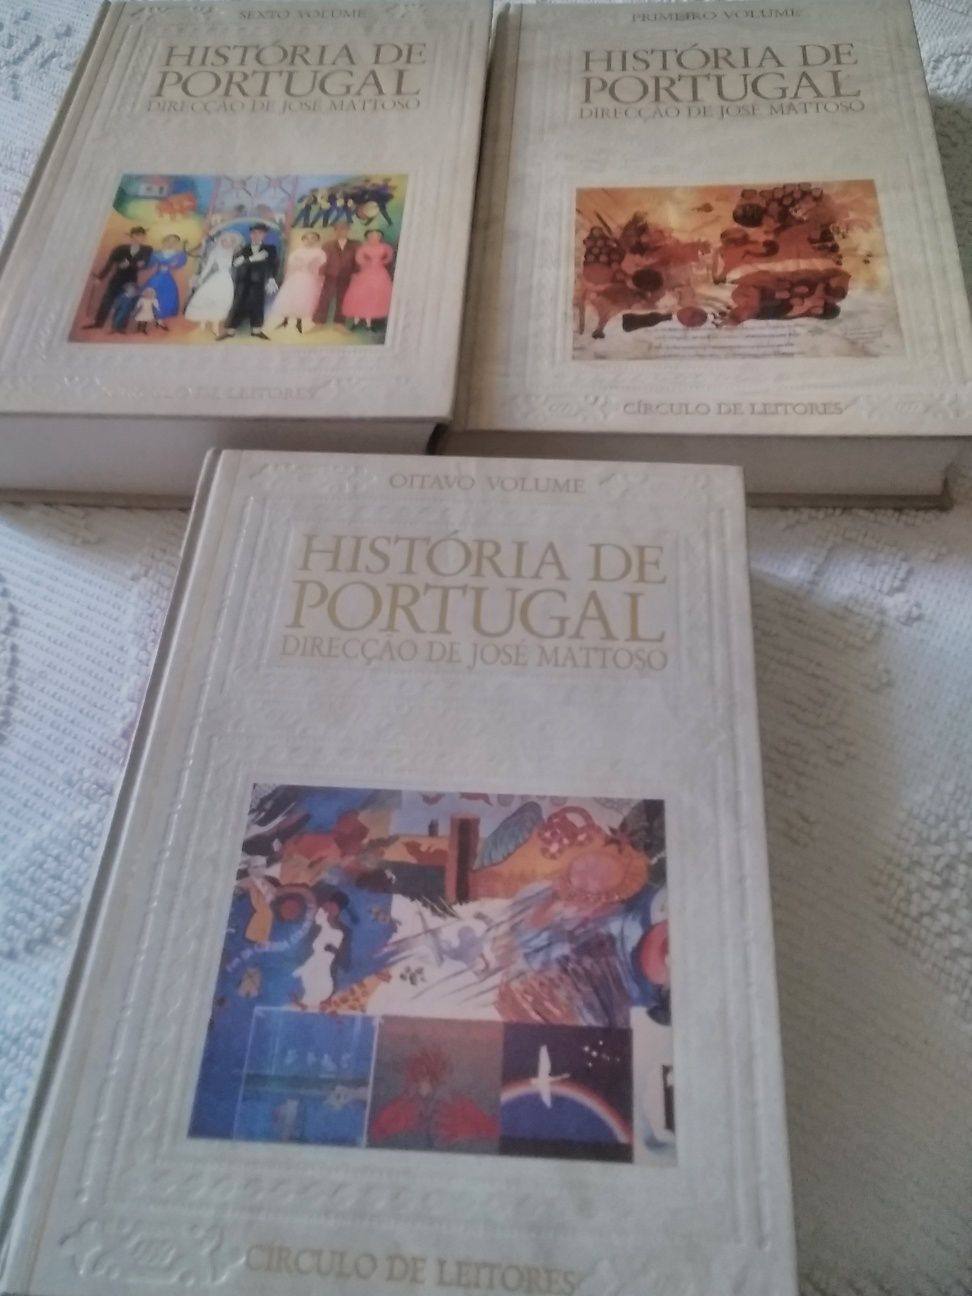 Volumes de História de Portugal números 1, 6 e 8